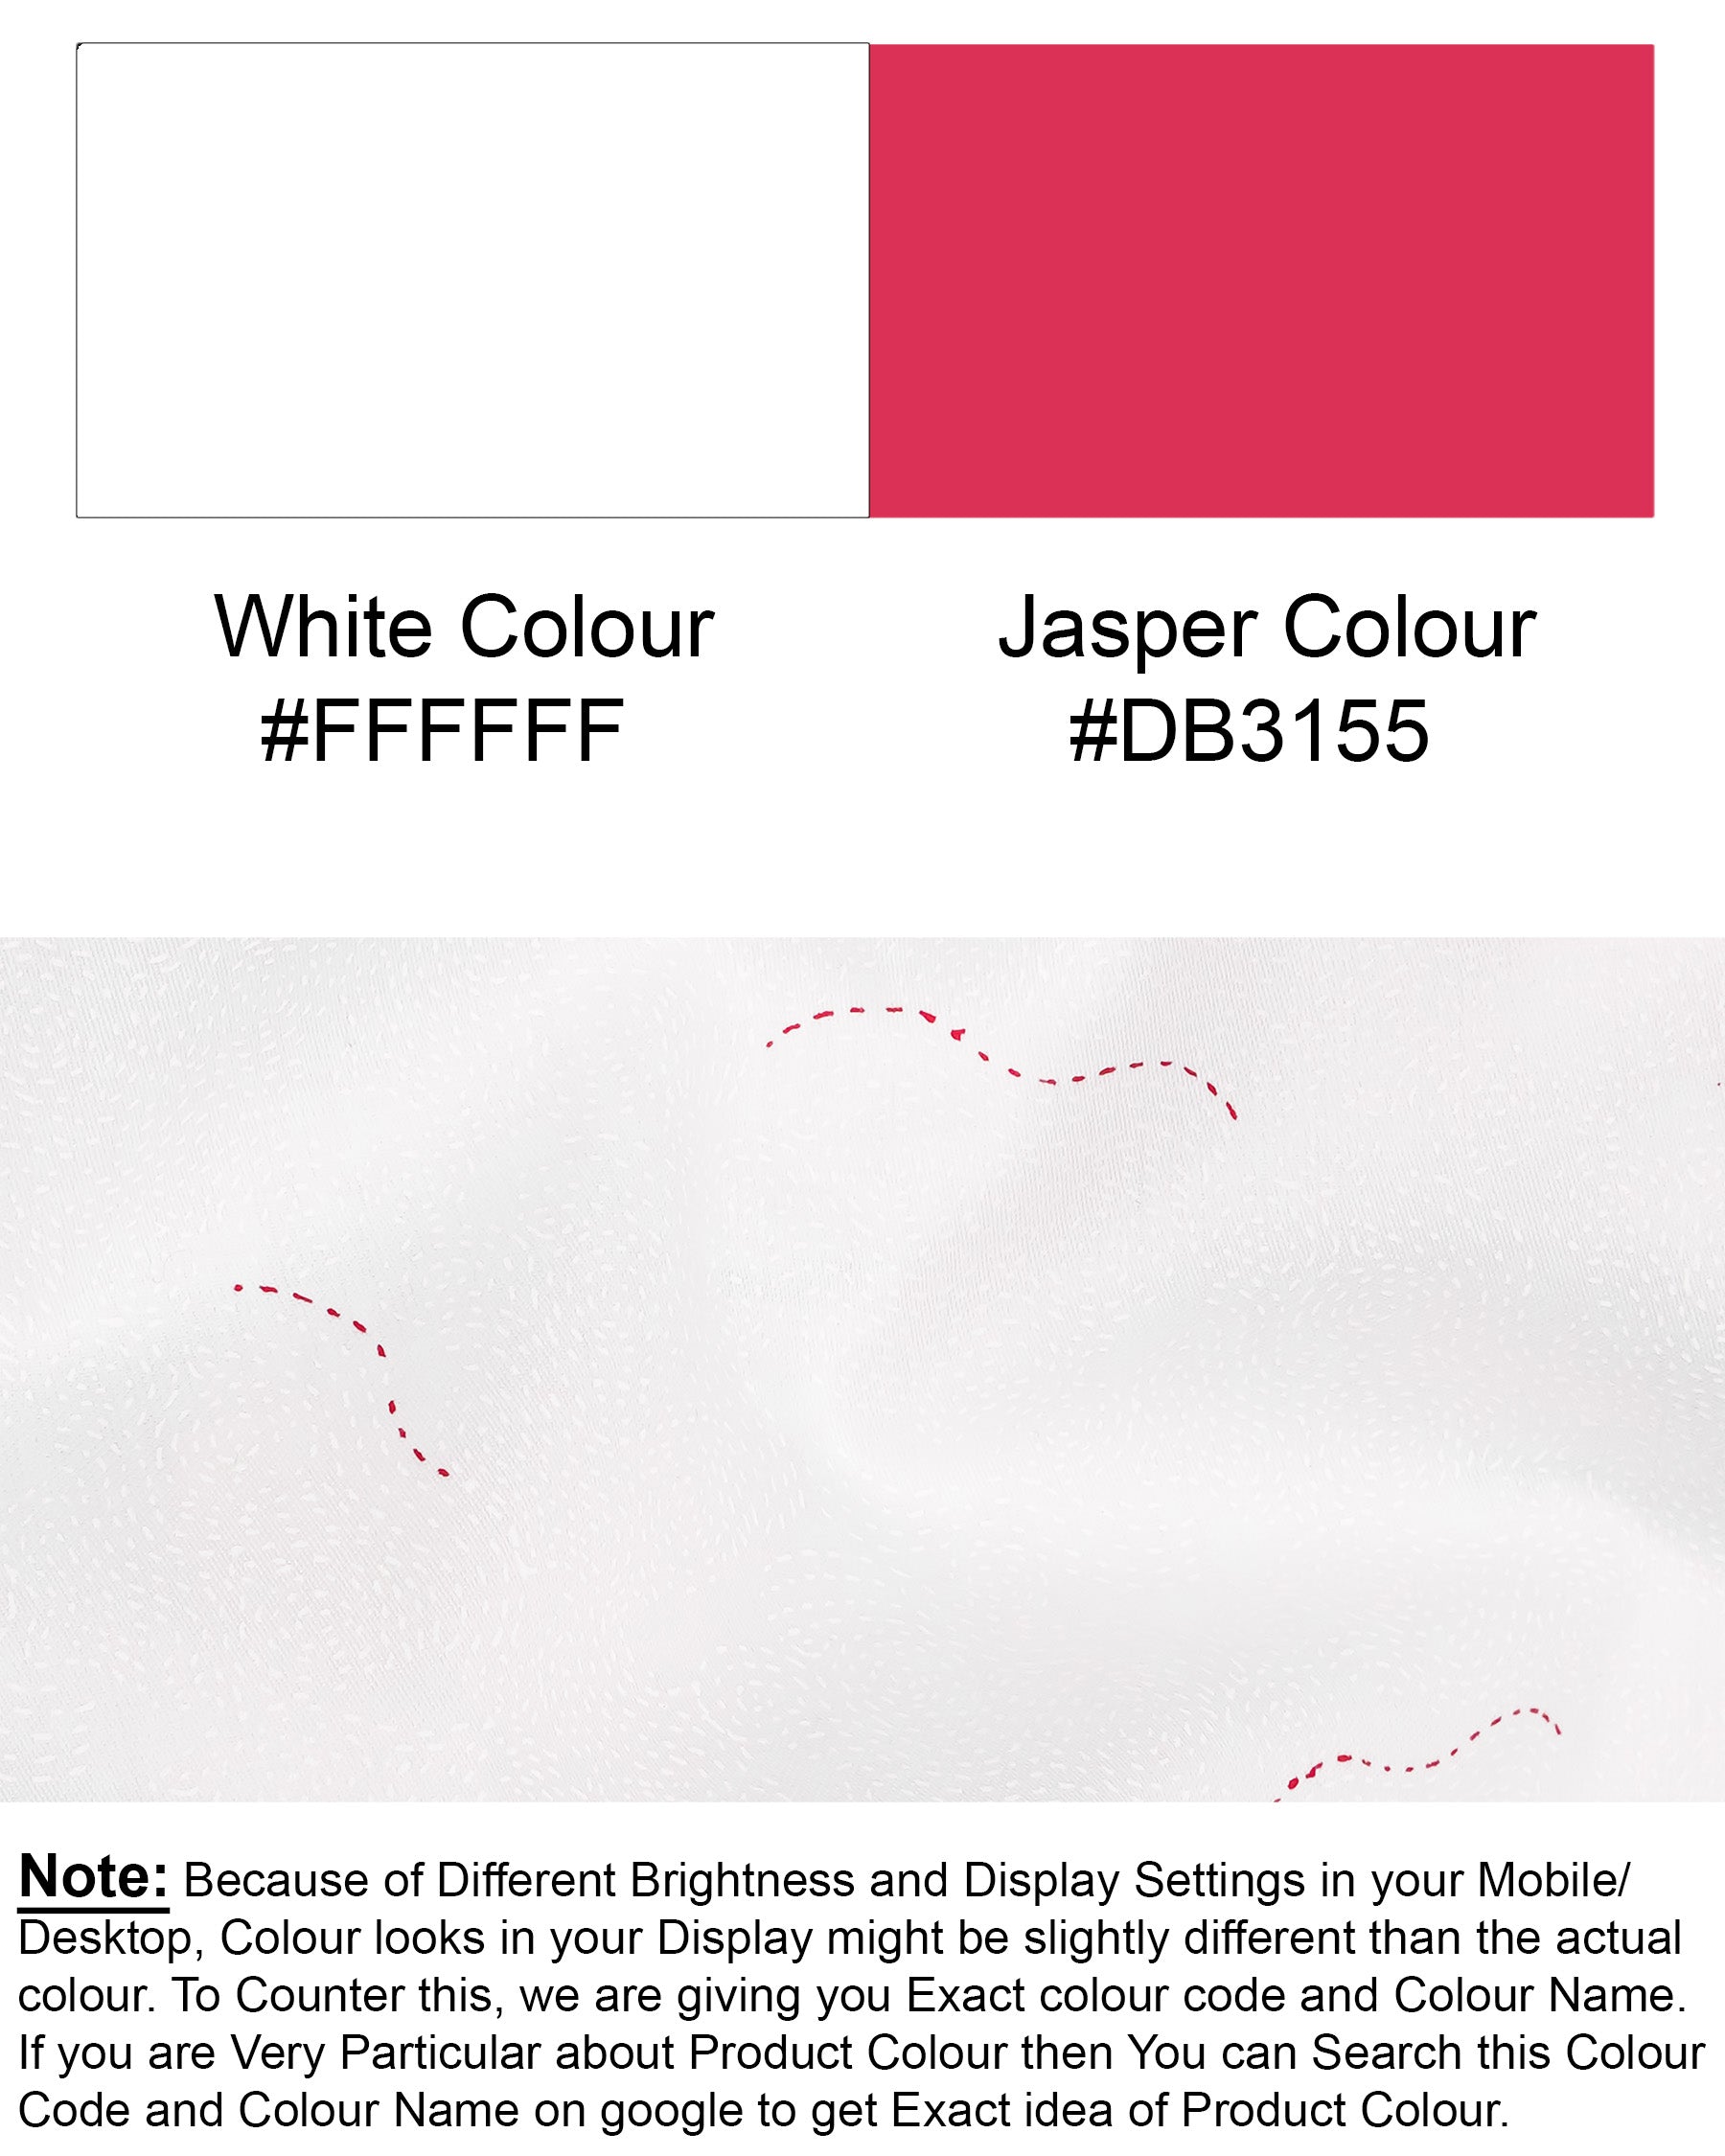 White and Jasper Pink Super Soft Premium Cotton Shirt 7206-CA-MN-38,7206-CA-MN-H-38,7206-CA-MN-39,7206-CA-MN-H-39,7206-CA-MN-40,7206-CA-MN-H-40,7206-CA-MN-42,7206-CA-MN-H-42,7206-CA-MN-44,7206-CA-MN-H-44,7206-CA-MN-46,7206-CA-MN-H-46,7206-CA-MN-48,7206-CA-MN-H-48,7206-CA-MN-50,7206-CA-MN-H-50,7206-CA-MN-52,7206-CA-MN-H-52